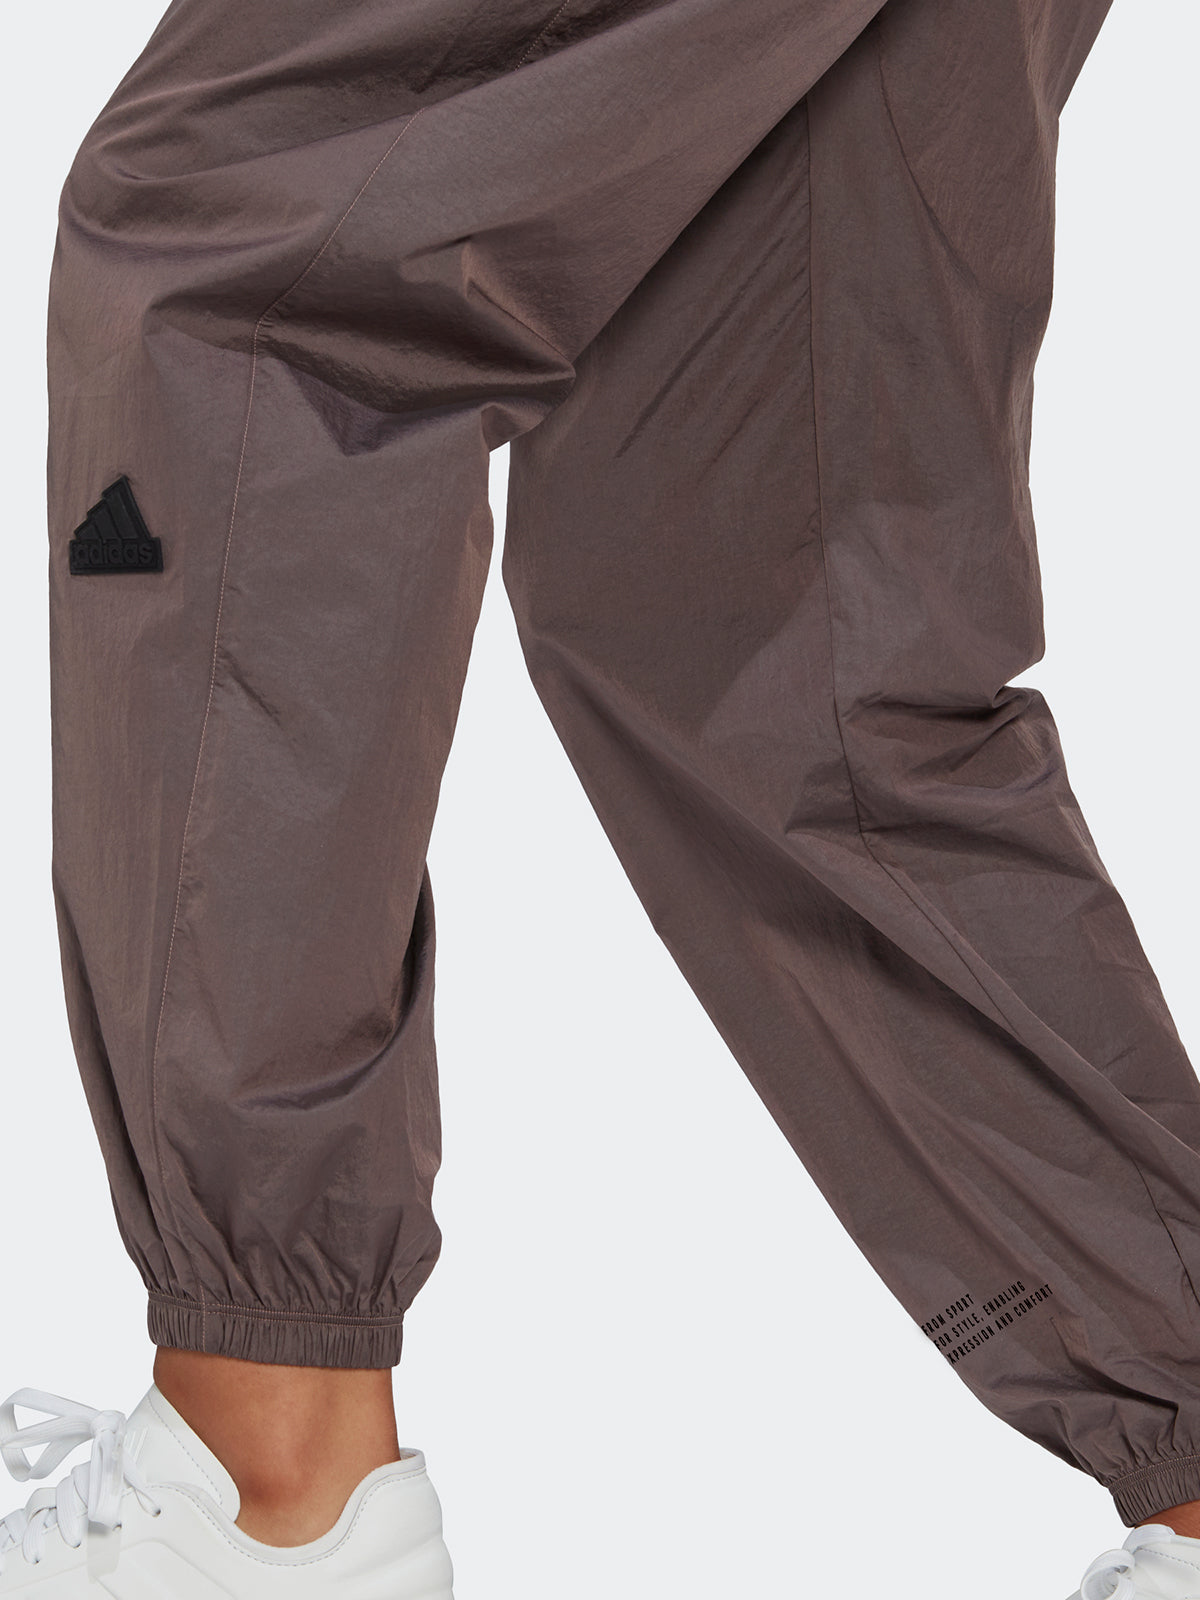 מכנסי ניילון עם לוגו- adidas performance|אדידס פרפורמנס